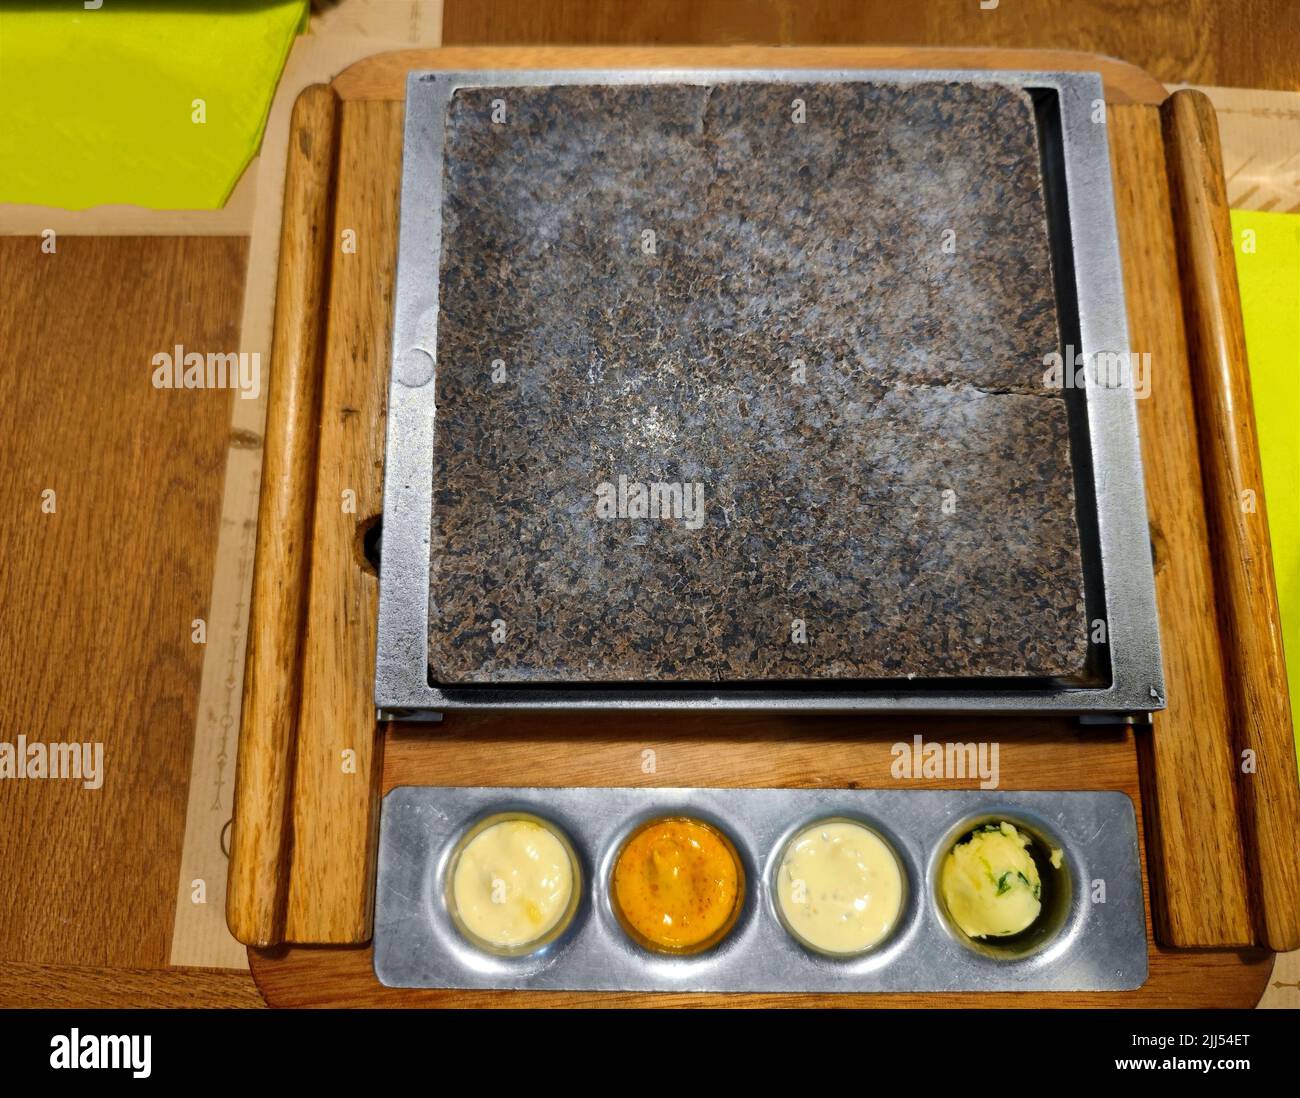 Nettoyez le gril en pierre sur une table de restaurant avec différents types de sauces sur le fond. Les gens peuvent mettre leur propre viande sur le gril Banque D'Images